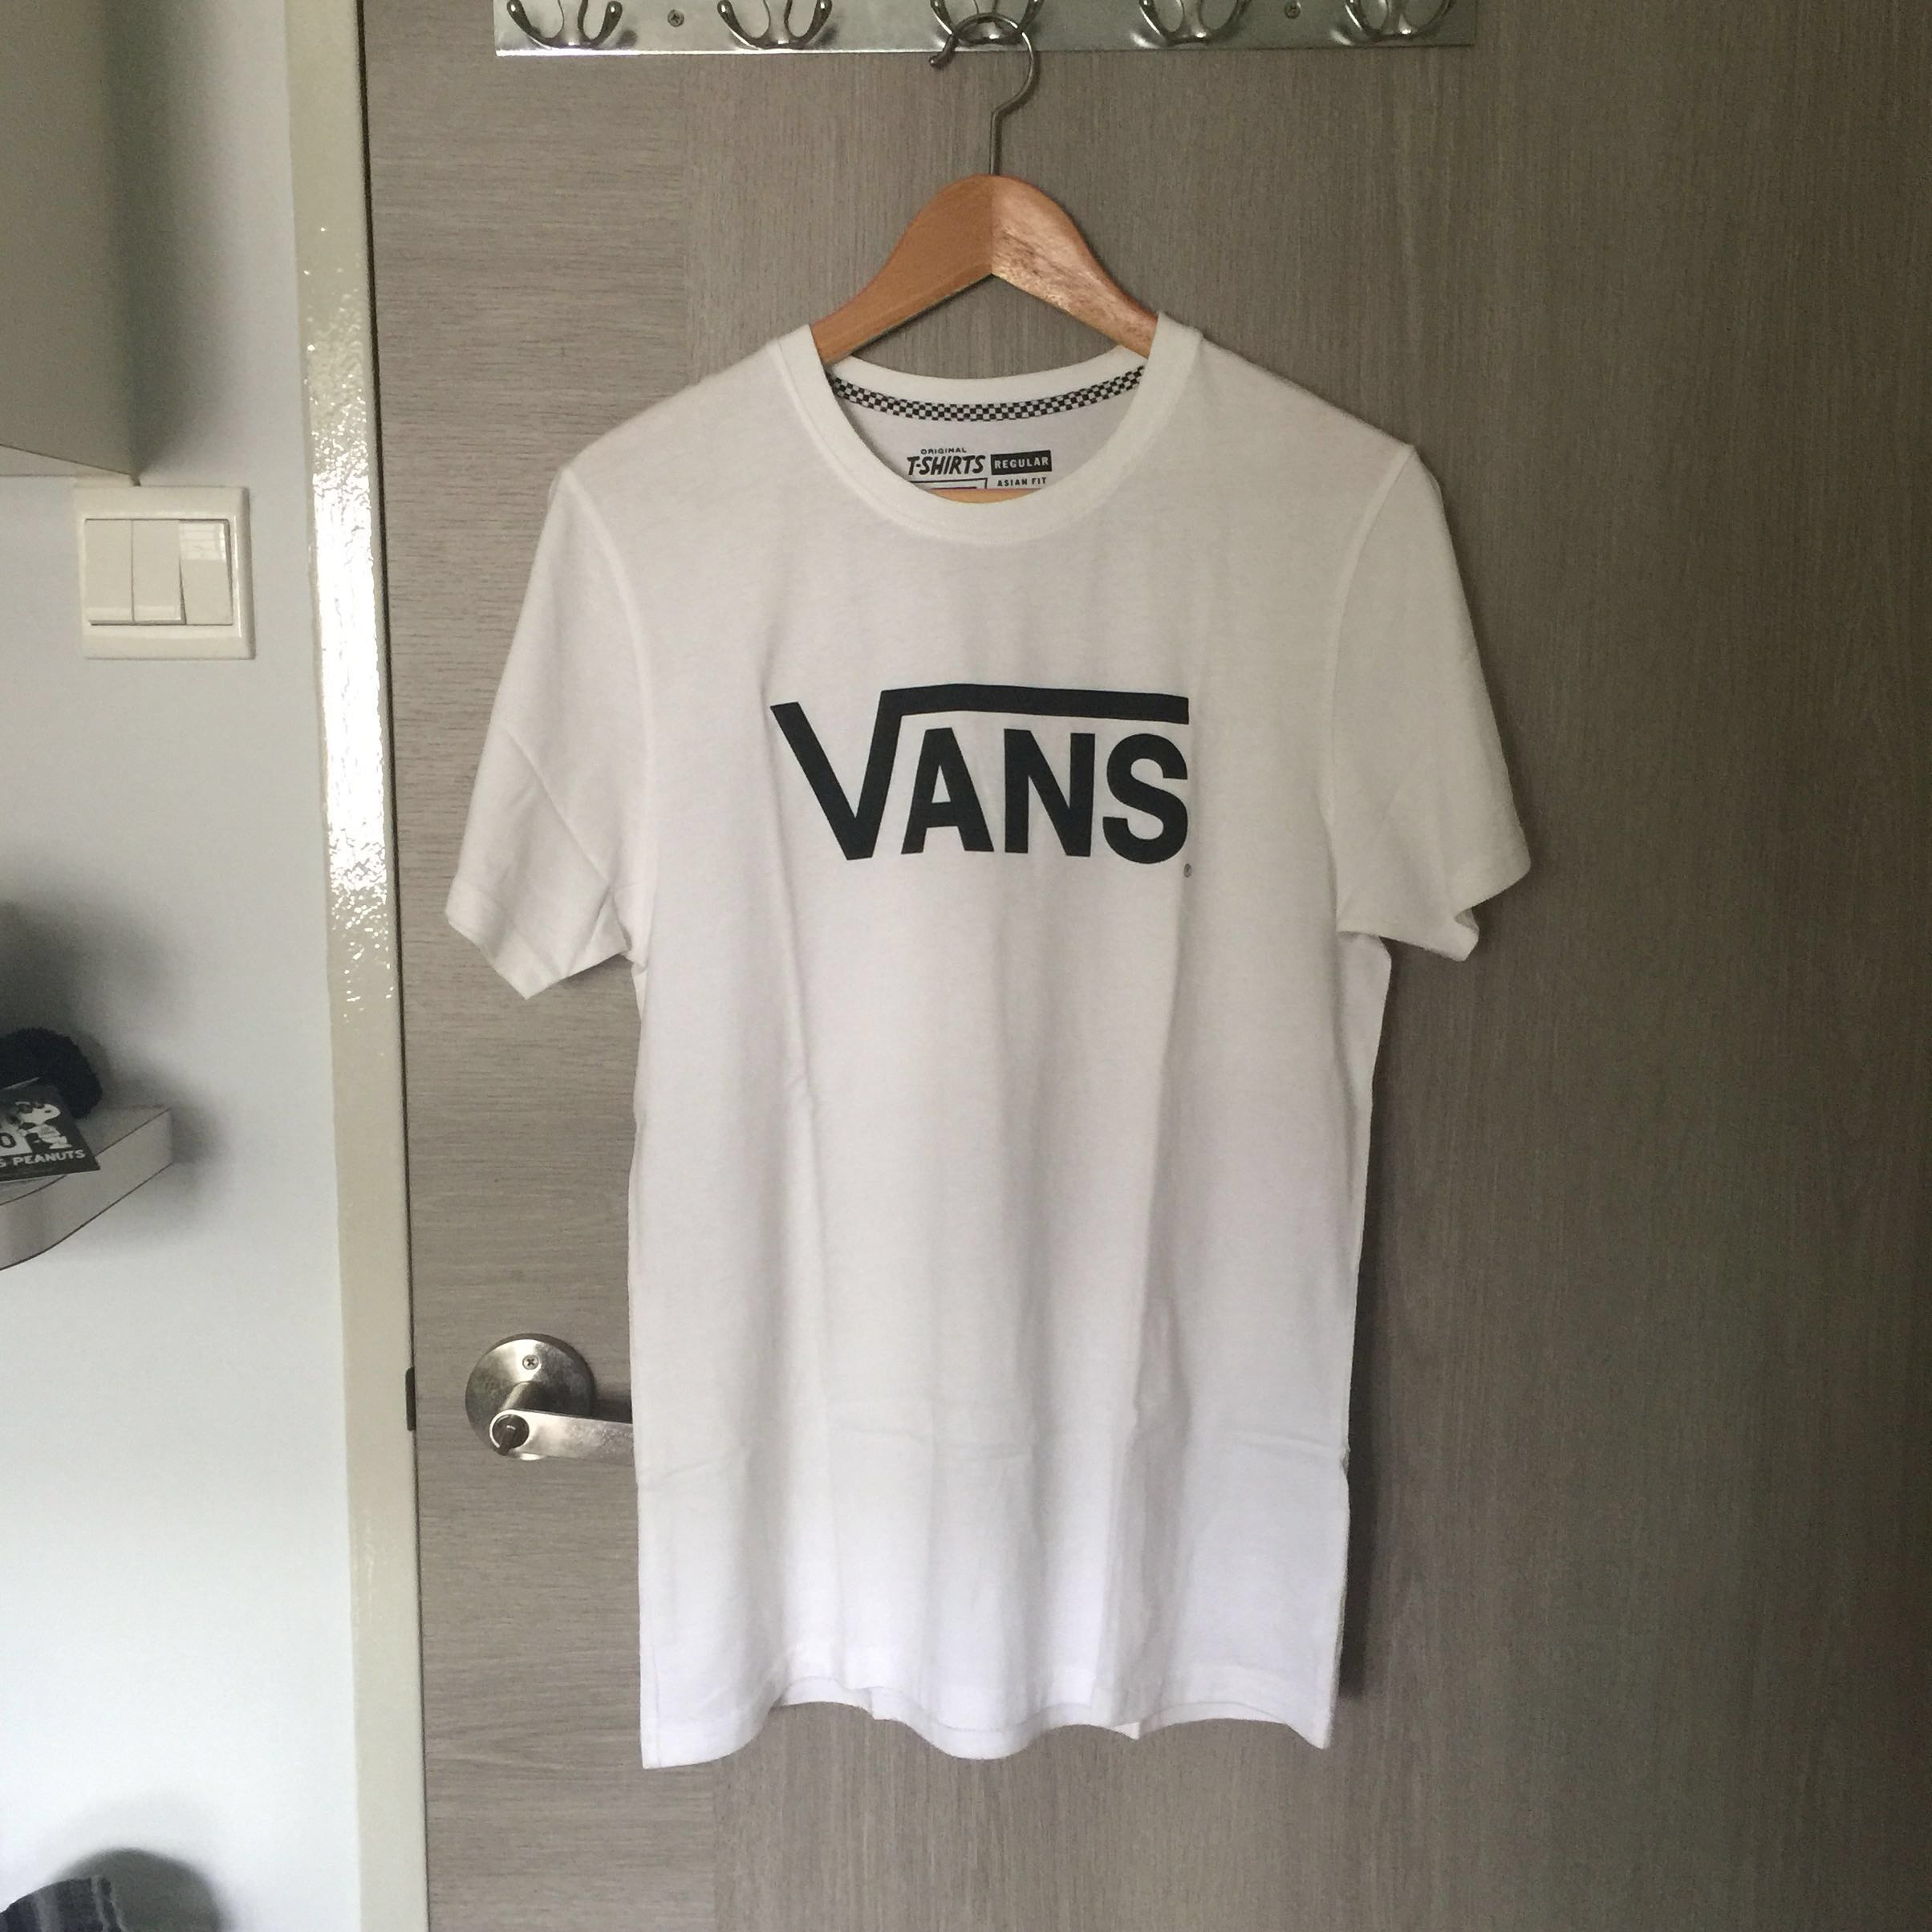 Buy > vans t shirt original > in stock